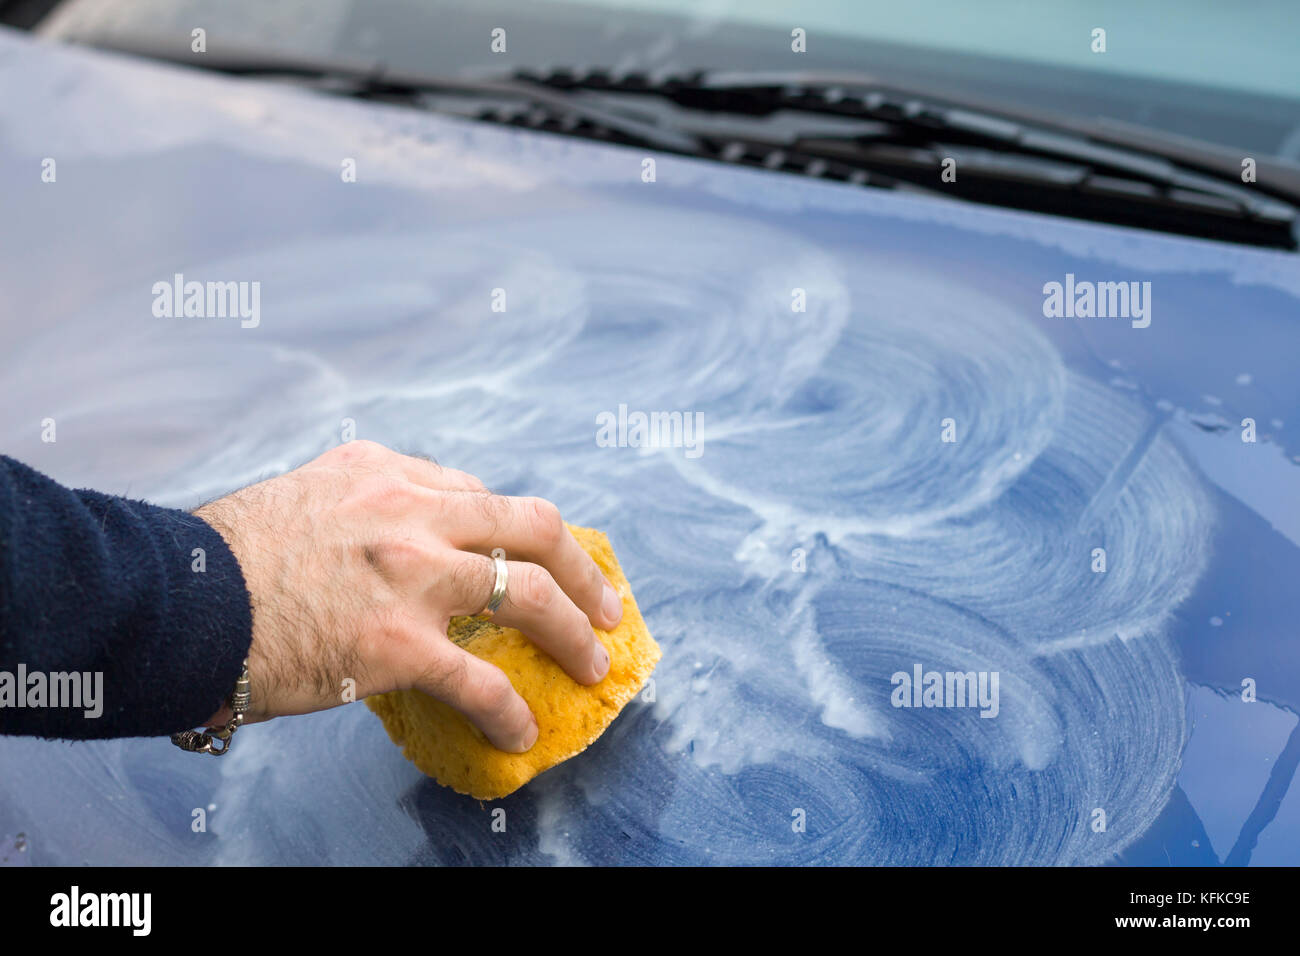 Applicare la pasta abrasiva per l'auto cofano con una spugna. maschio si  applica a mano di pasta abrasiva sulla vernice dell'auto con spugna Foto  stock - Alamy